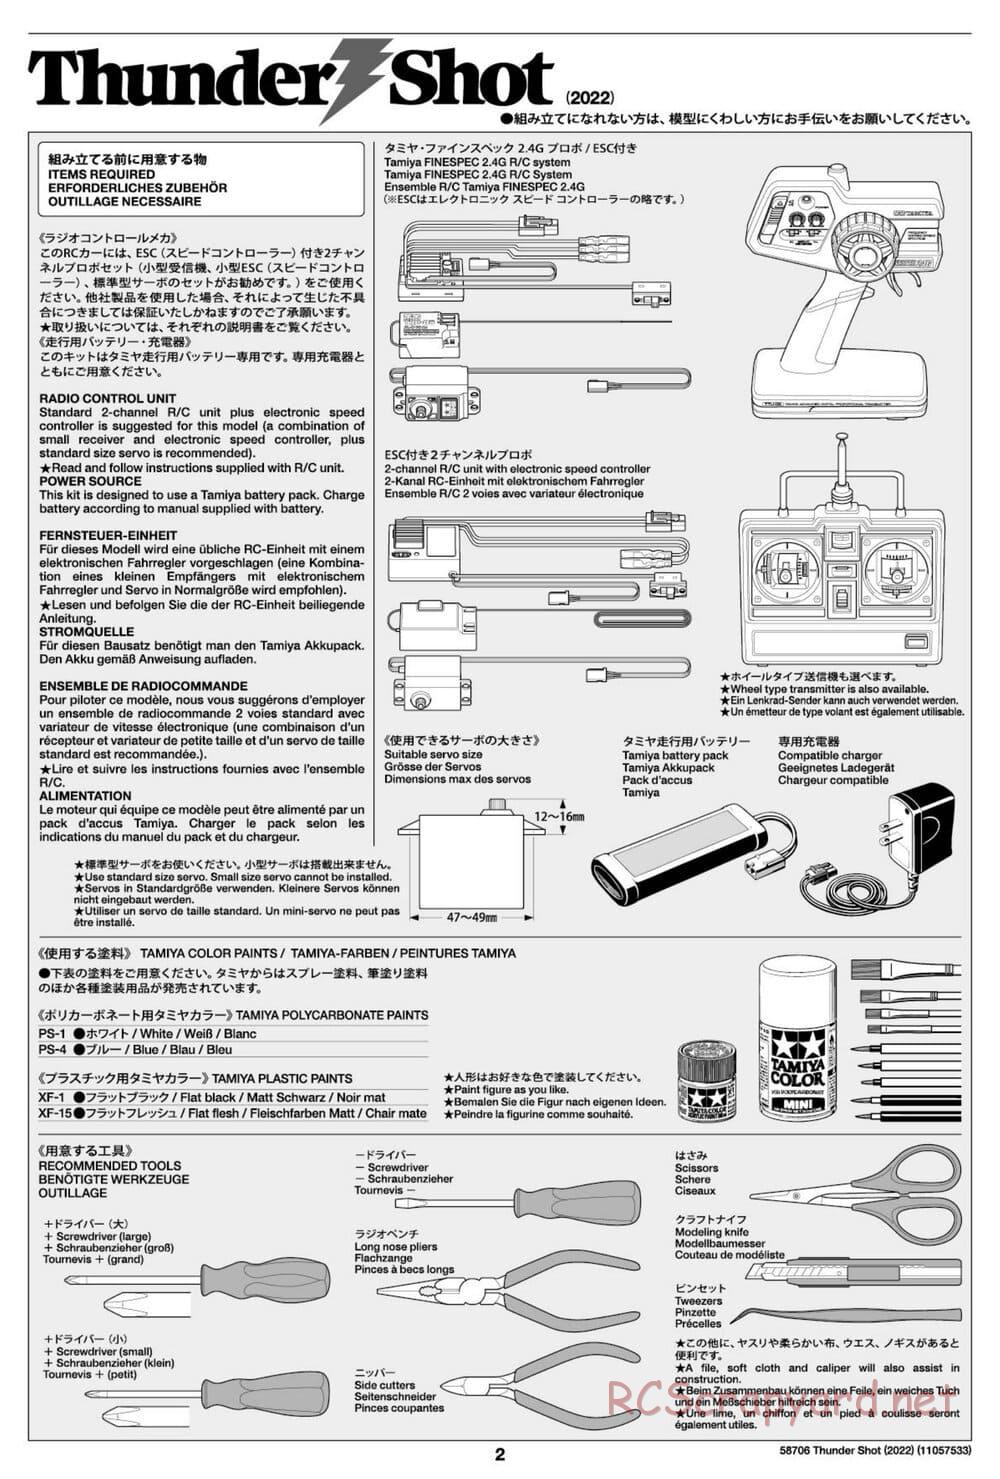 Tamiya - Thunder Shot (2022) - TS1/TS2 Chassis - Manual - Page 2